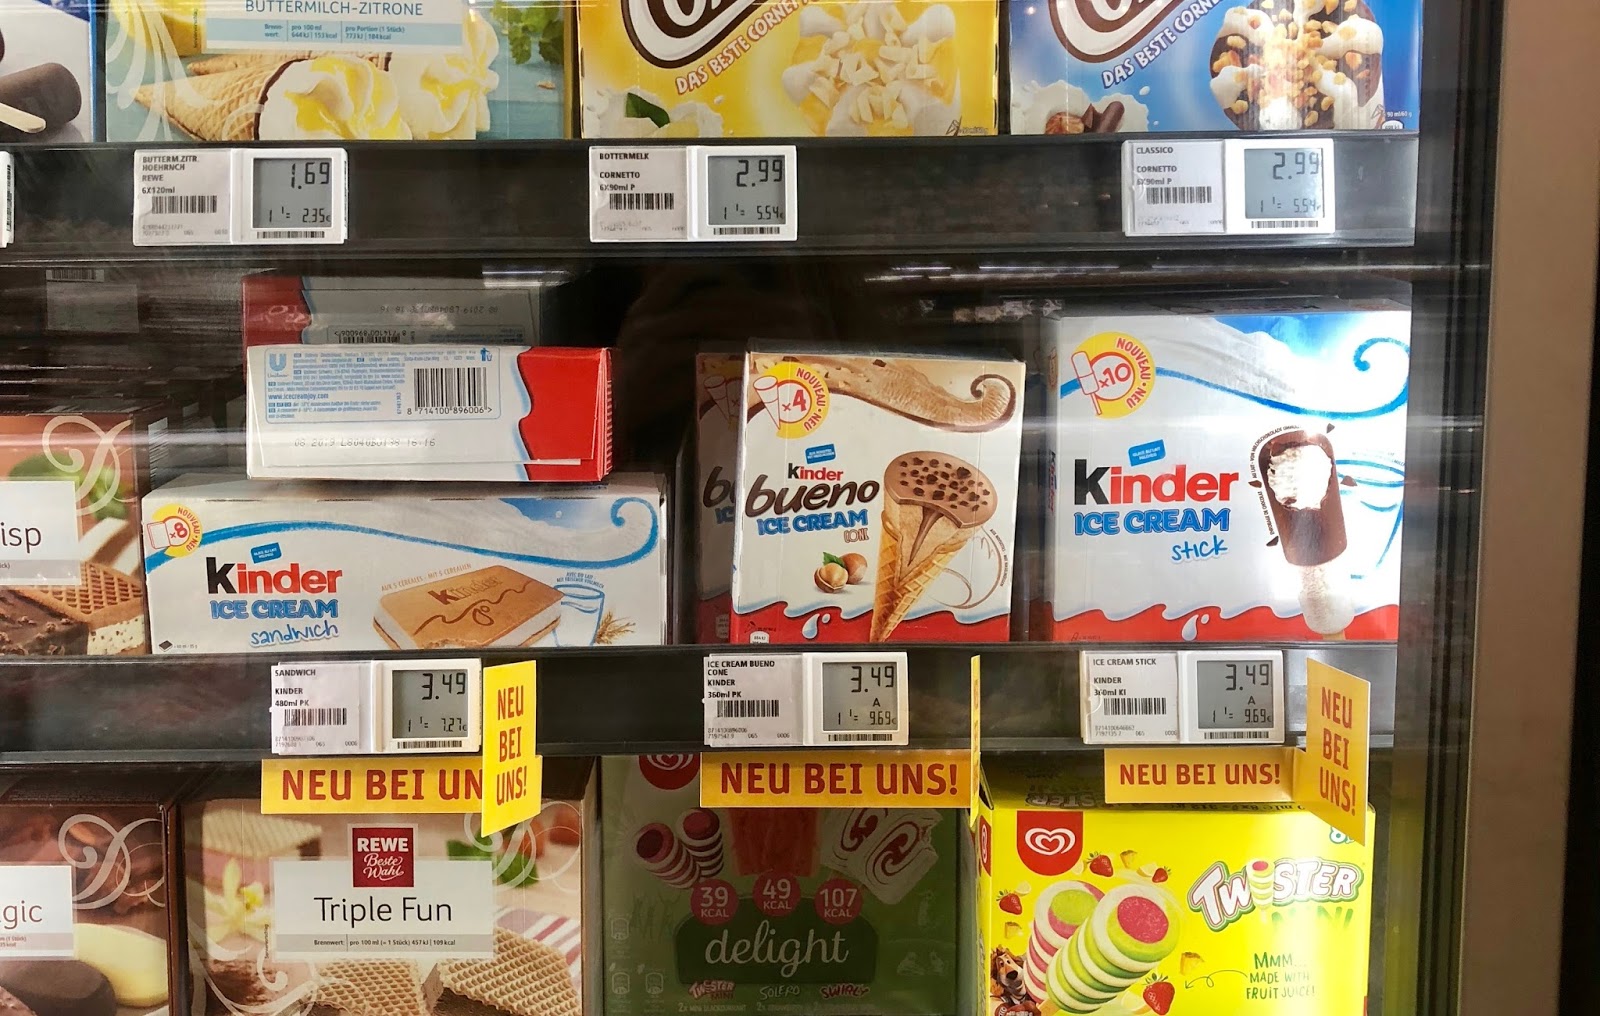 Neu Kinder Ice Cream Sticks Glutenfrei Ein Glutenfreier Blog